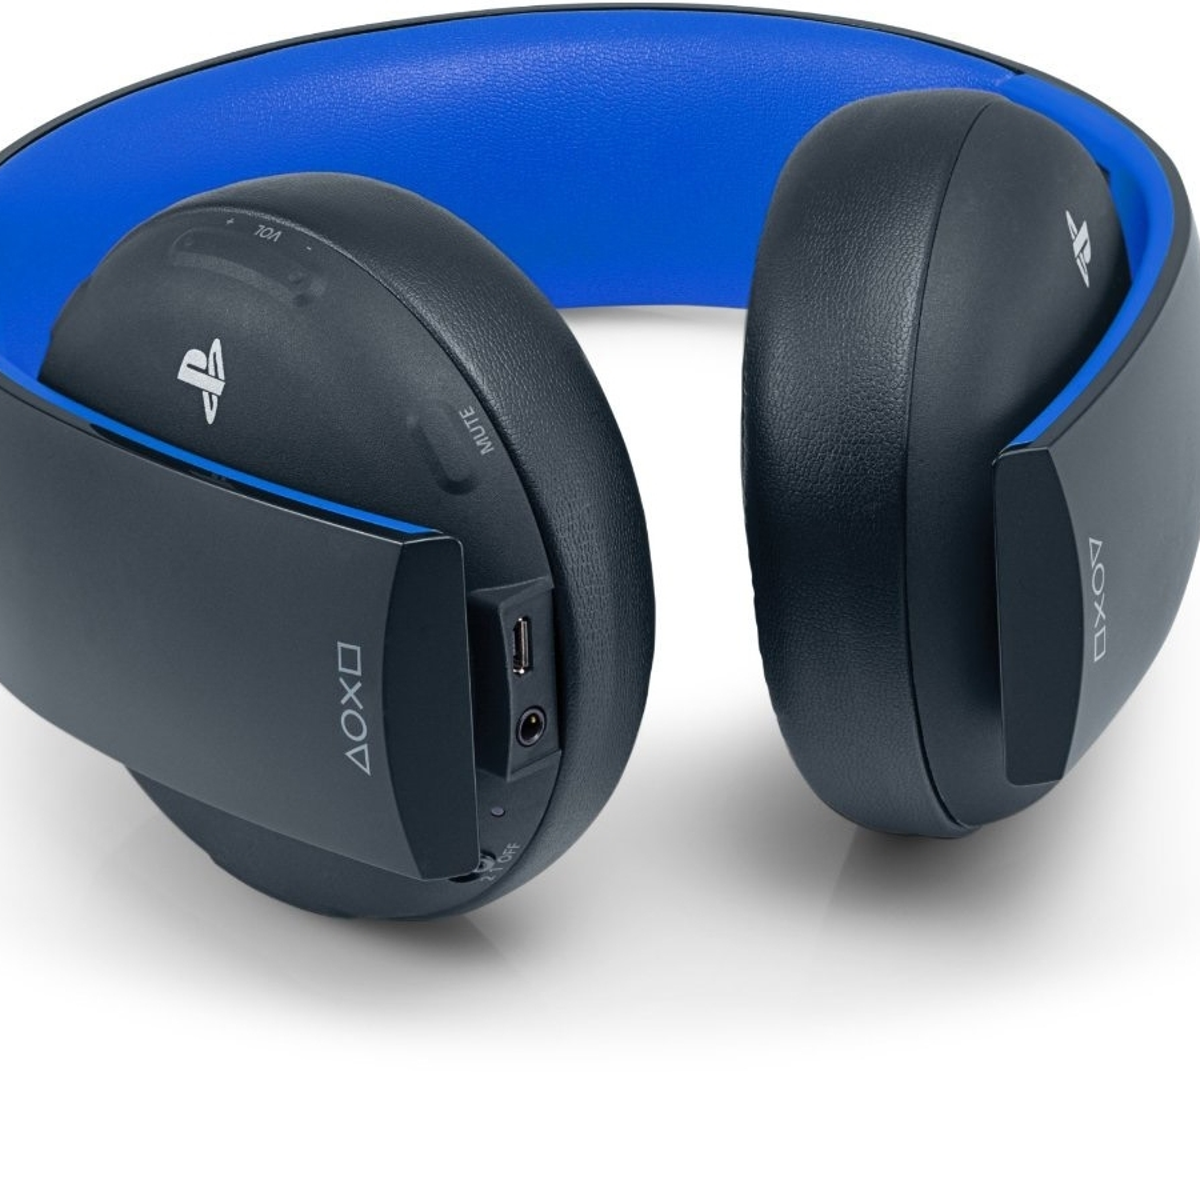 Sony Wireless Headset review | Eurogamer.net